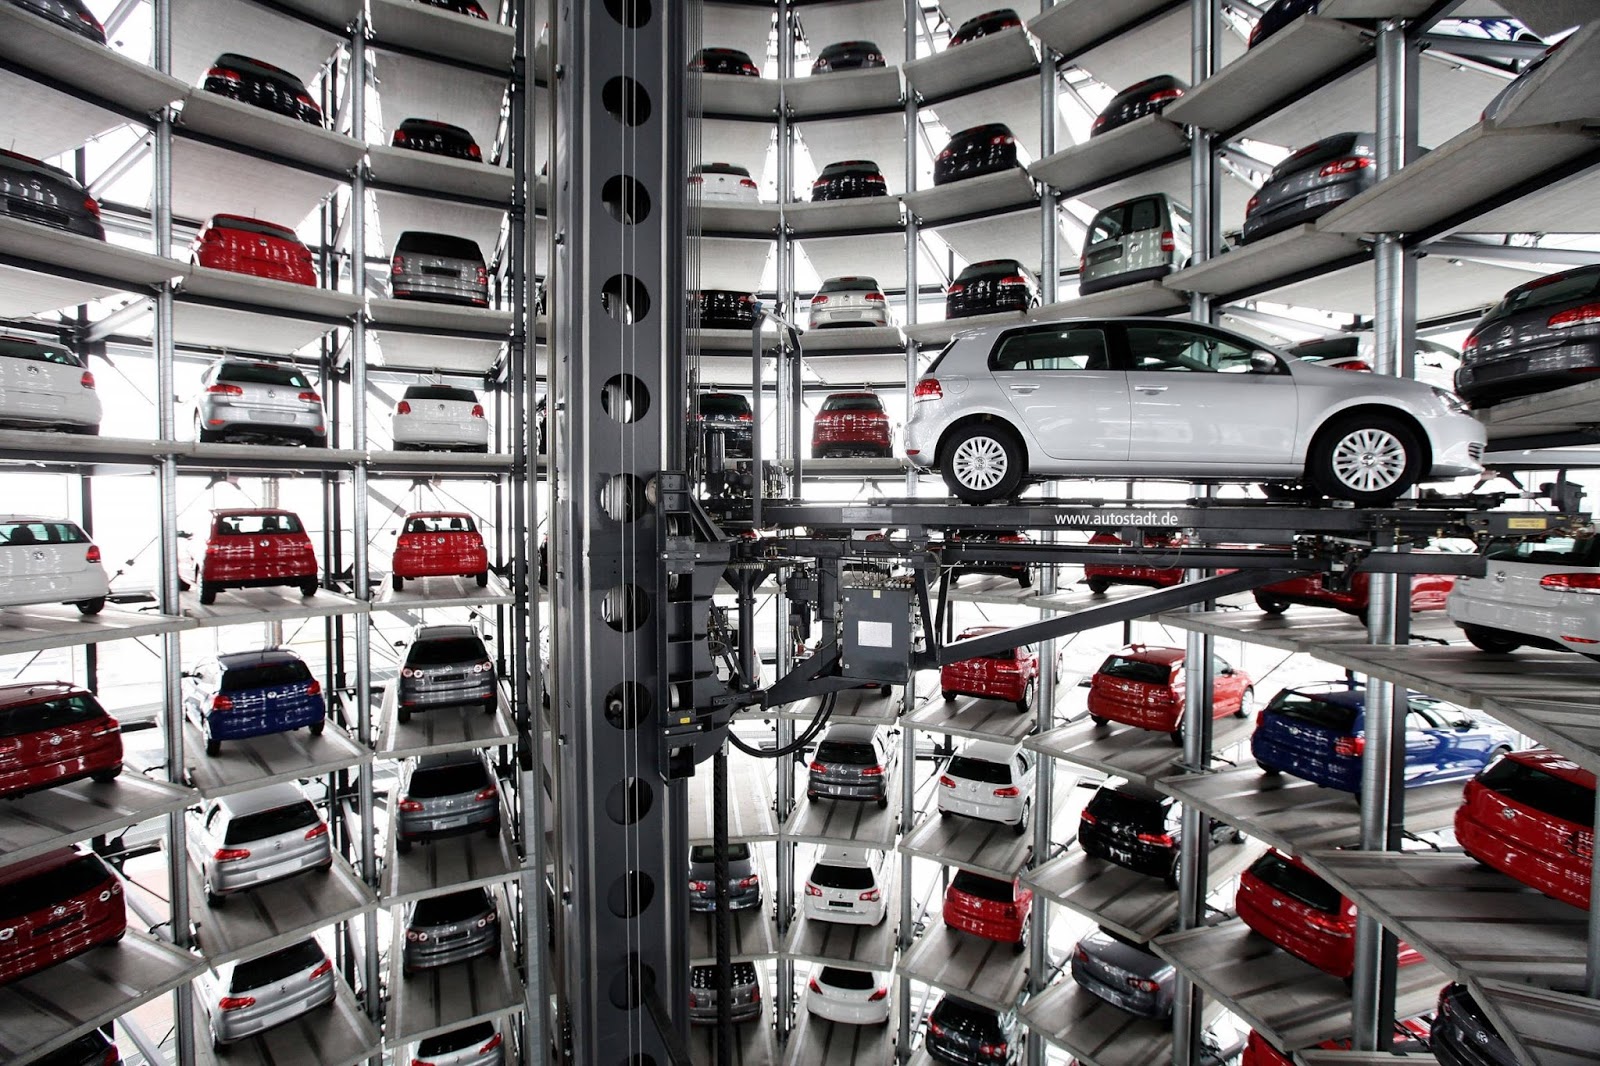 10 Incredible Parking Garage Designs